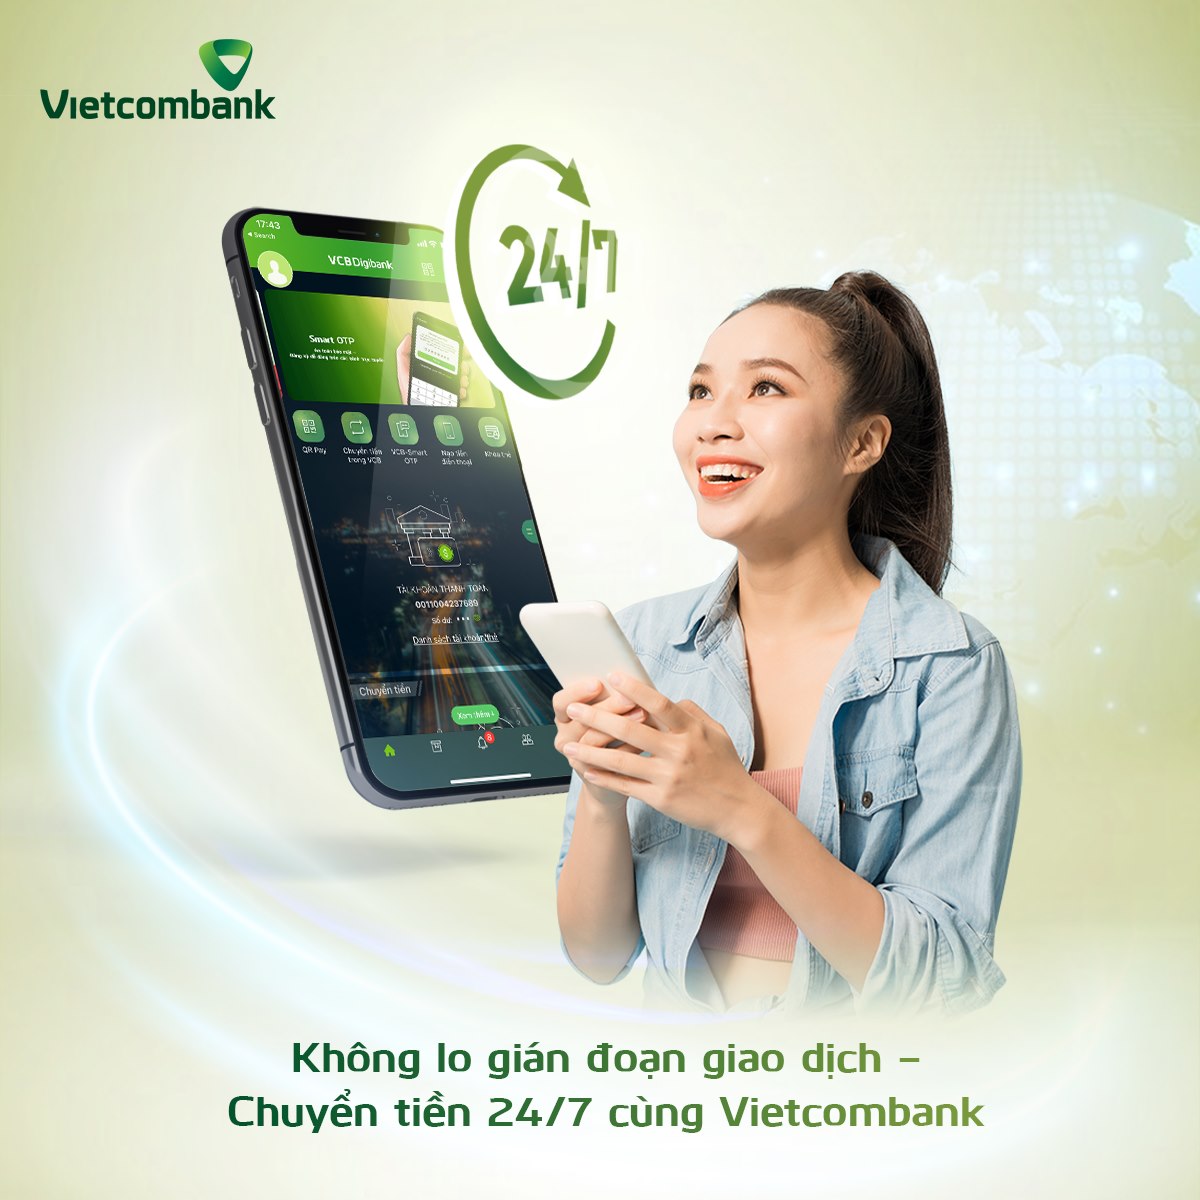 SMS Vietcombank còn nhiều công dụng hữu ích không giống nhau